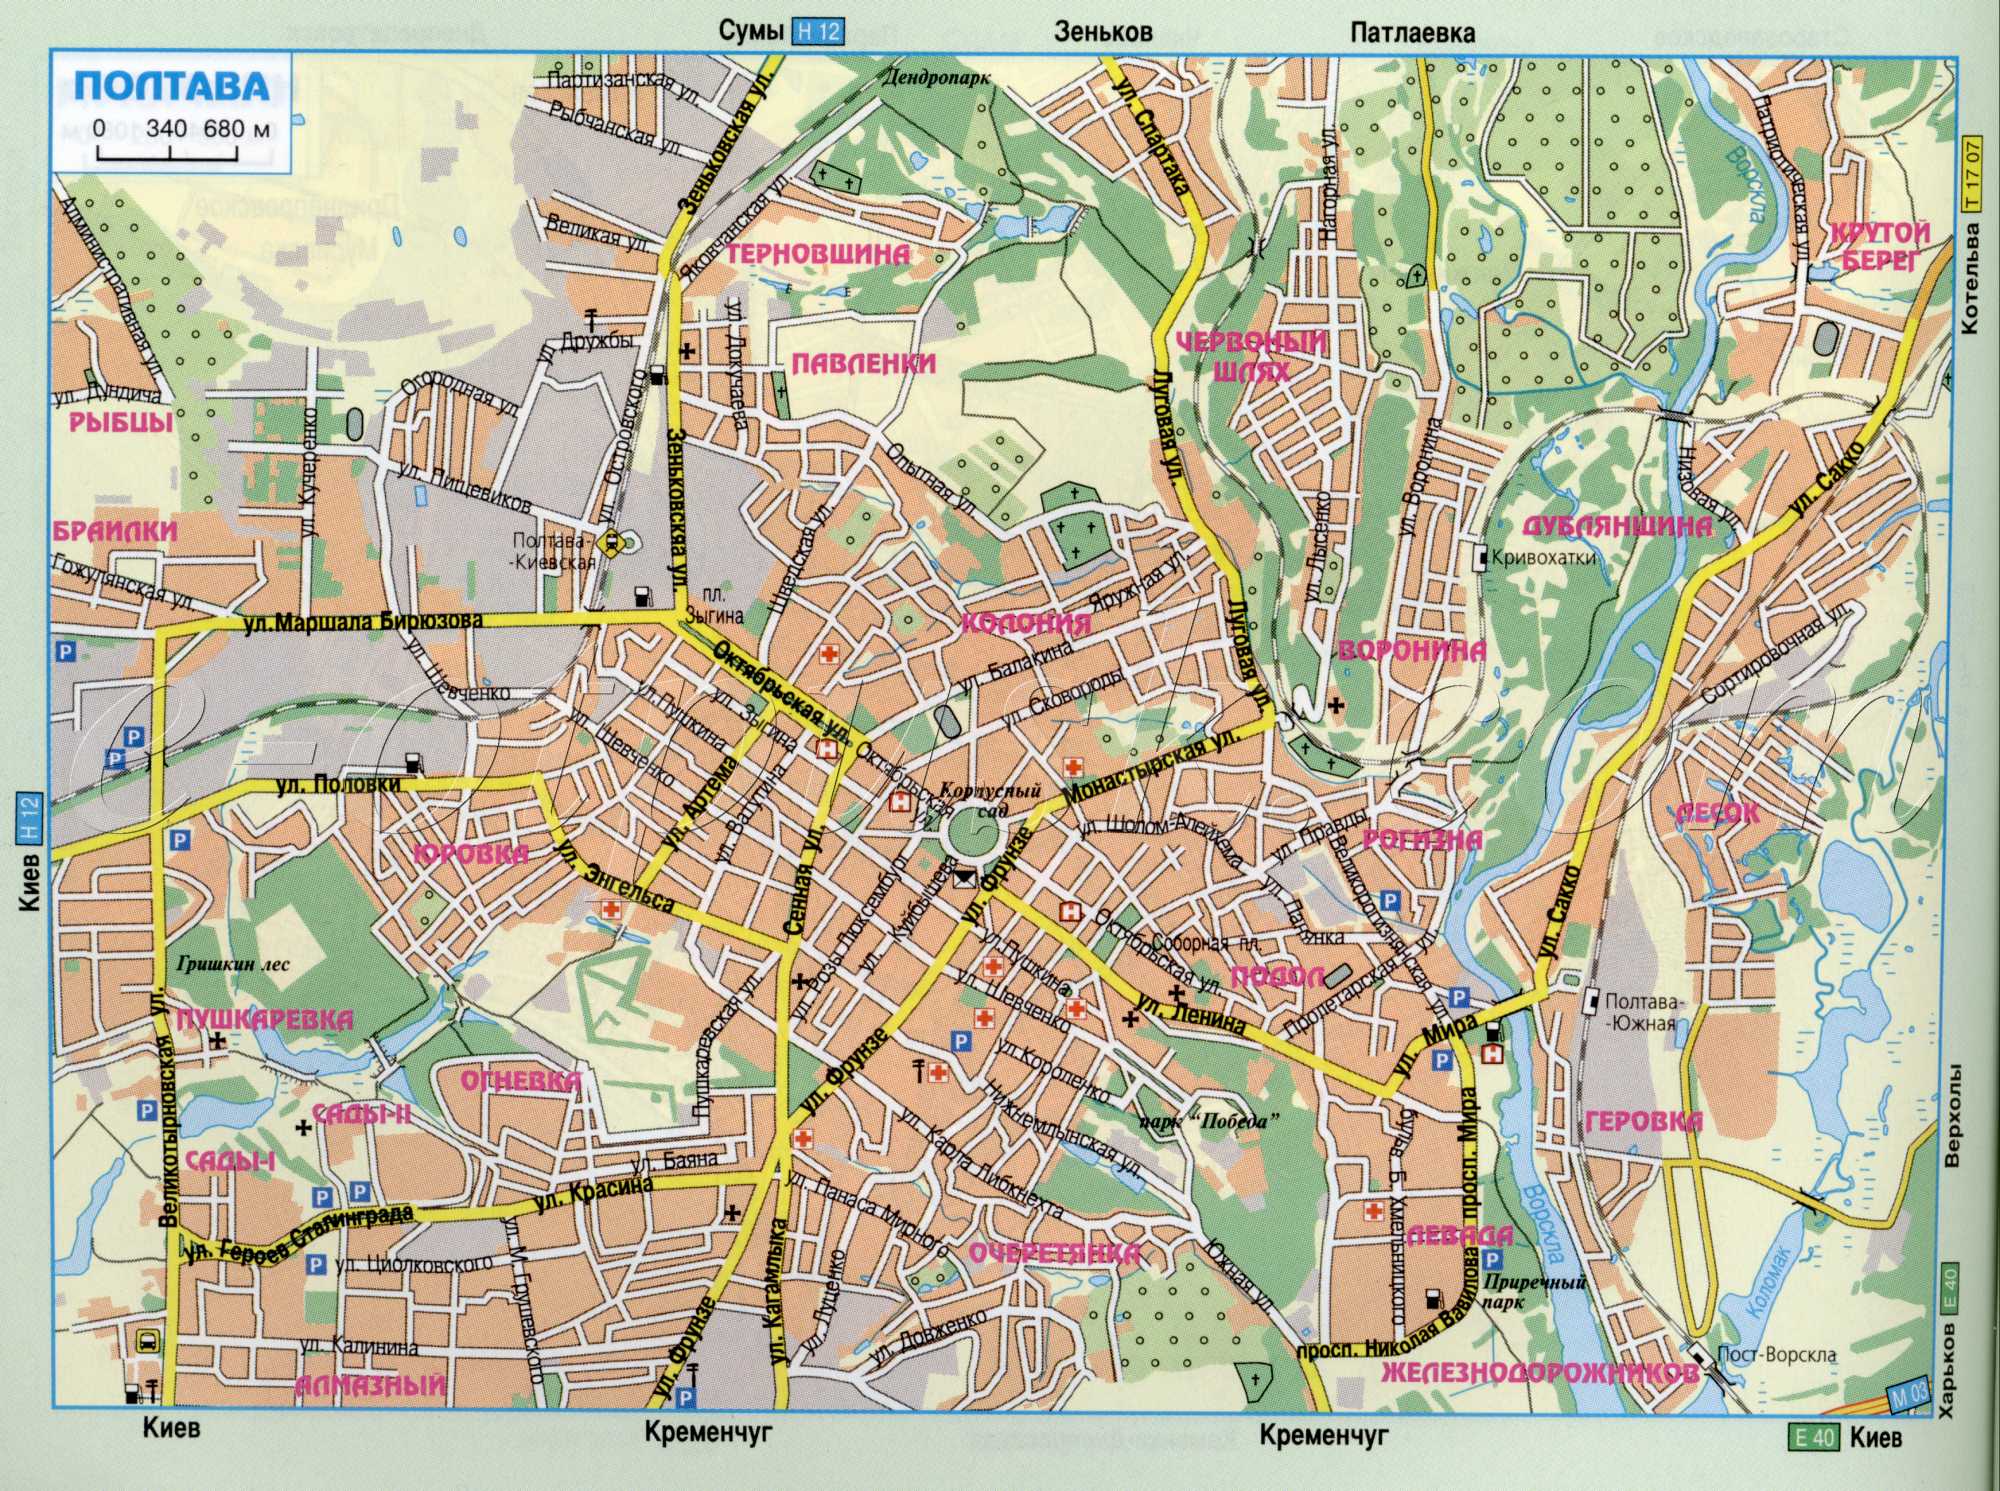 Carte de Poltava, routes de la ville de Poltava satin voitures de tourisme. téléchargement gratuit